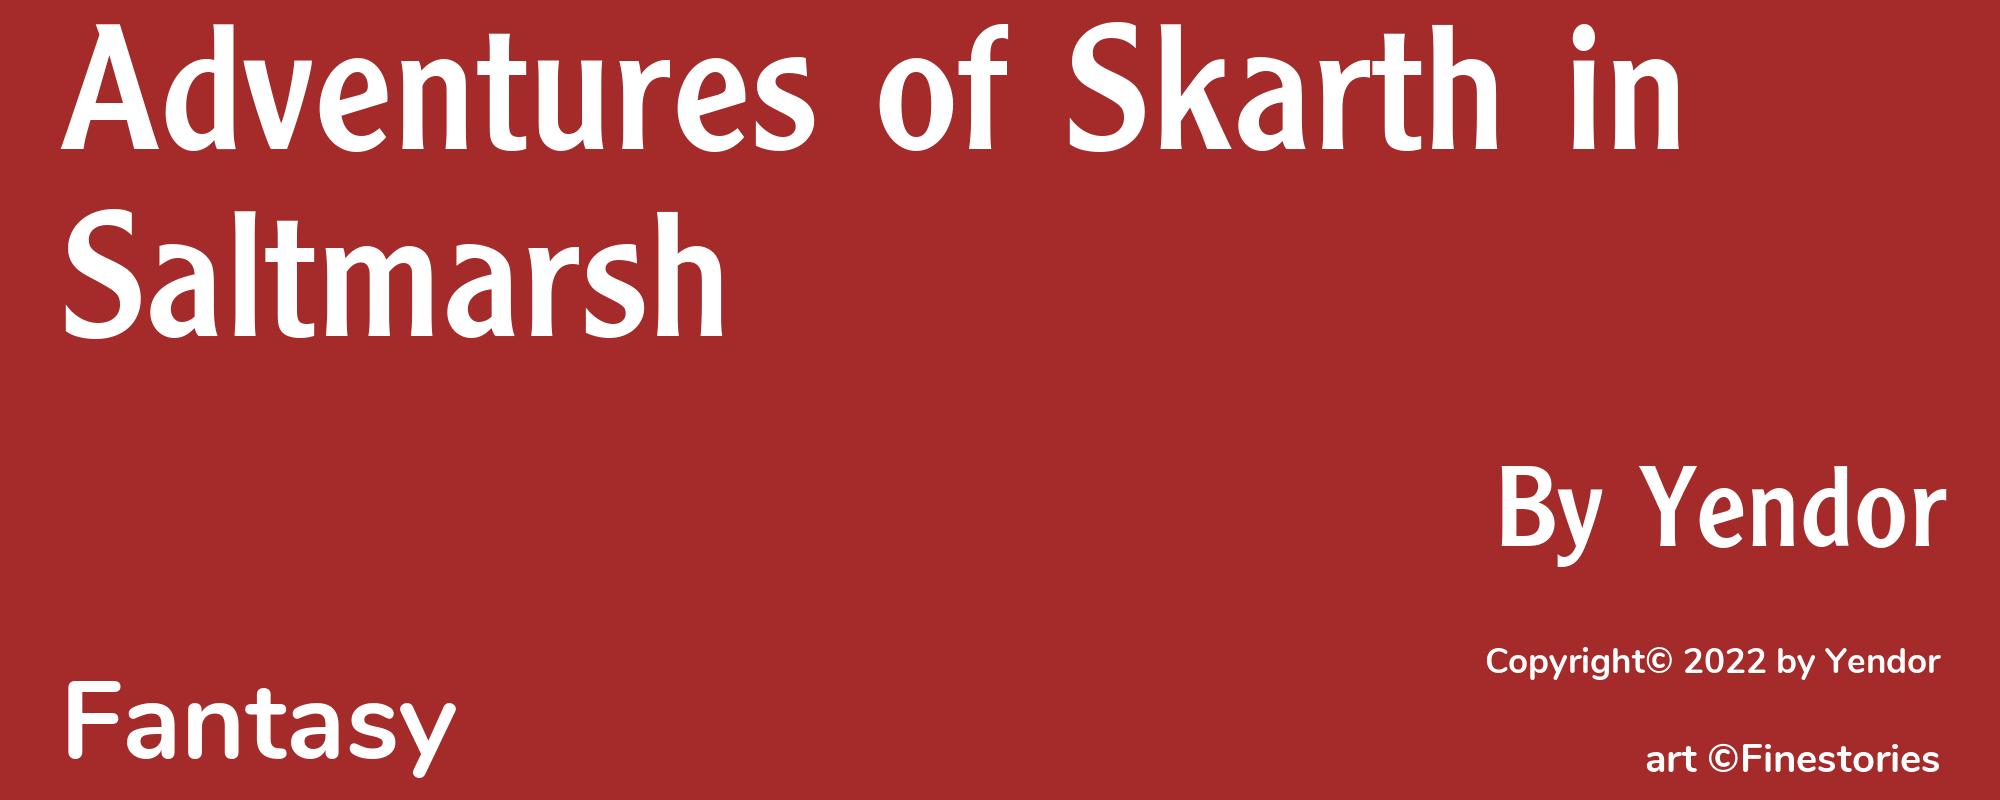 Adventures of Skarth in Saltmarsh - Cover